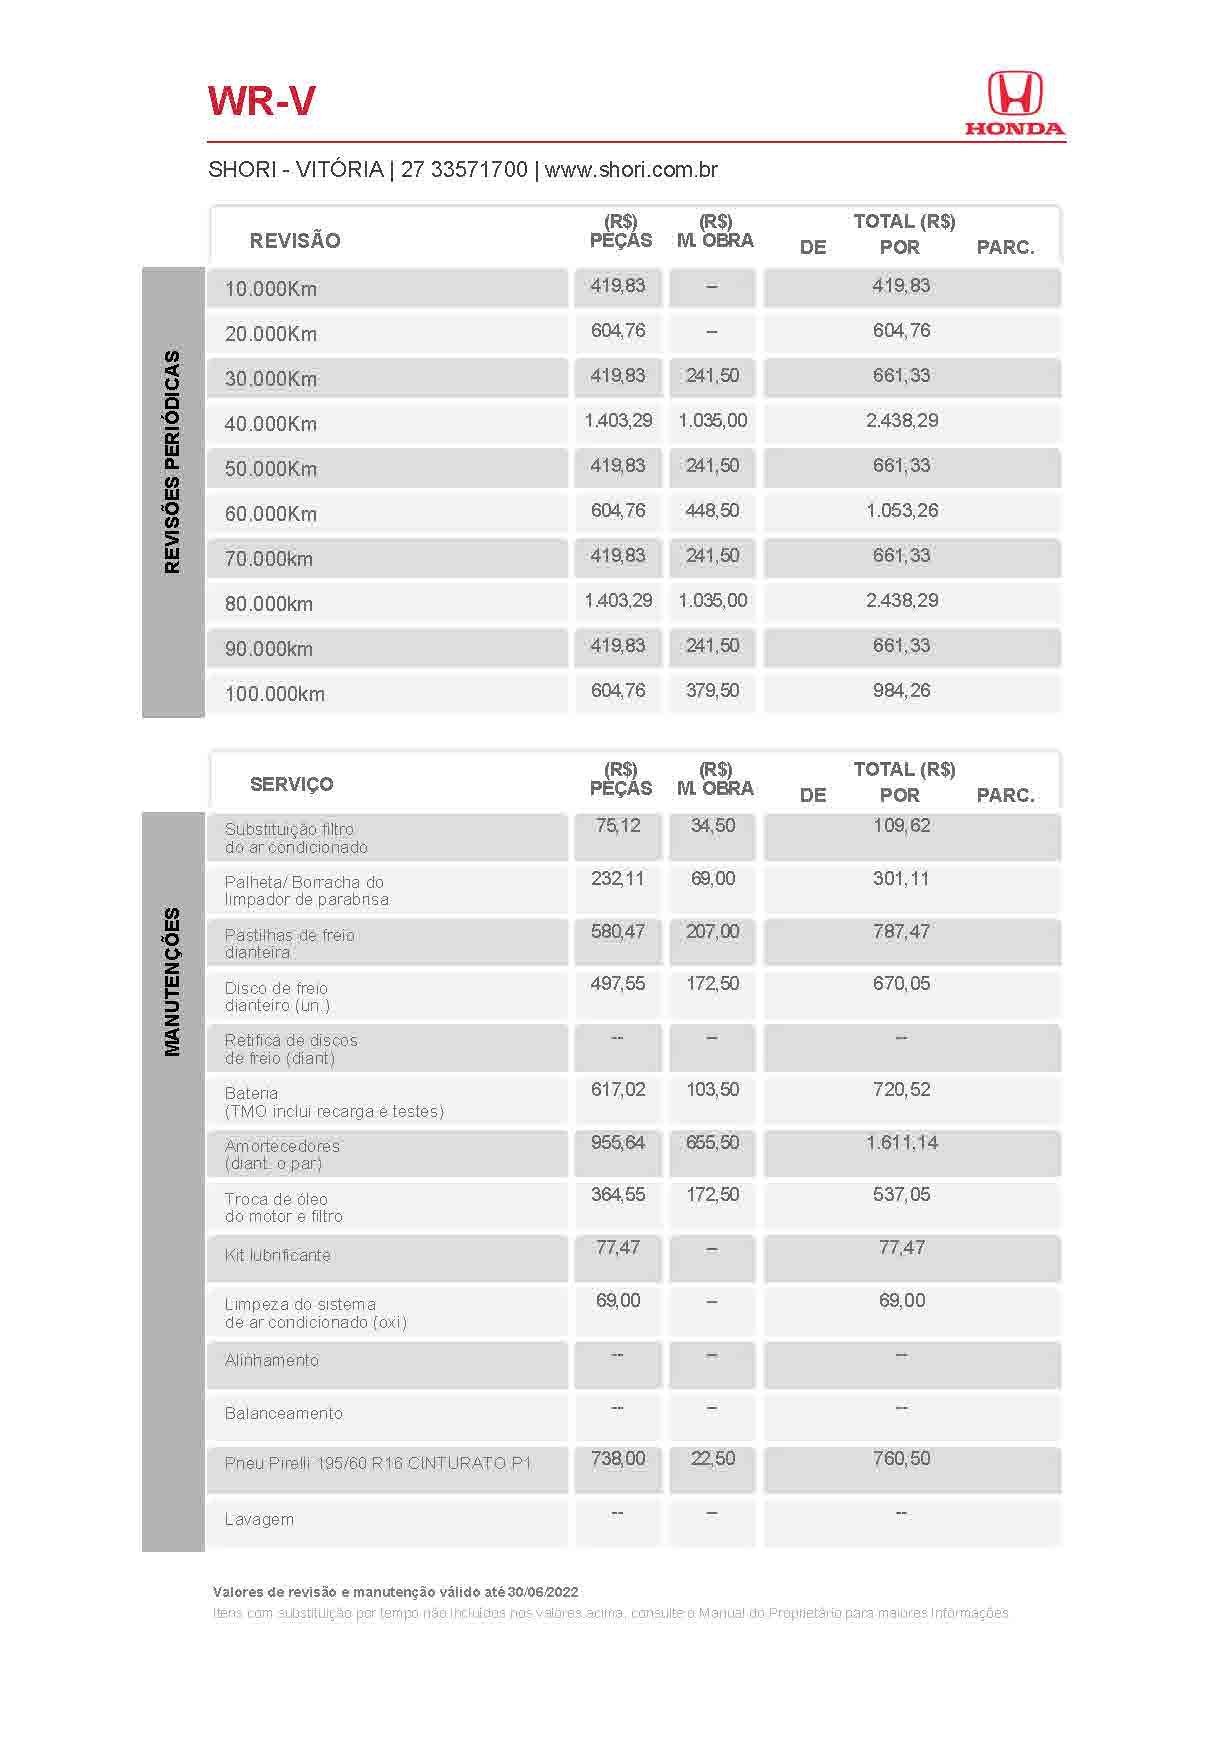 Honda Shori Tabela de Revisão wr v 2022 06 30